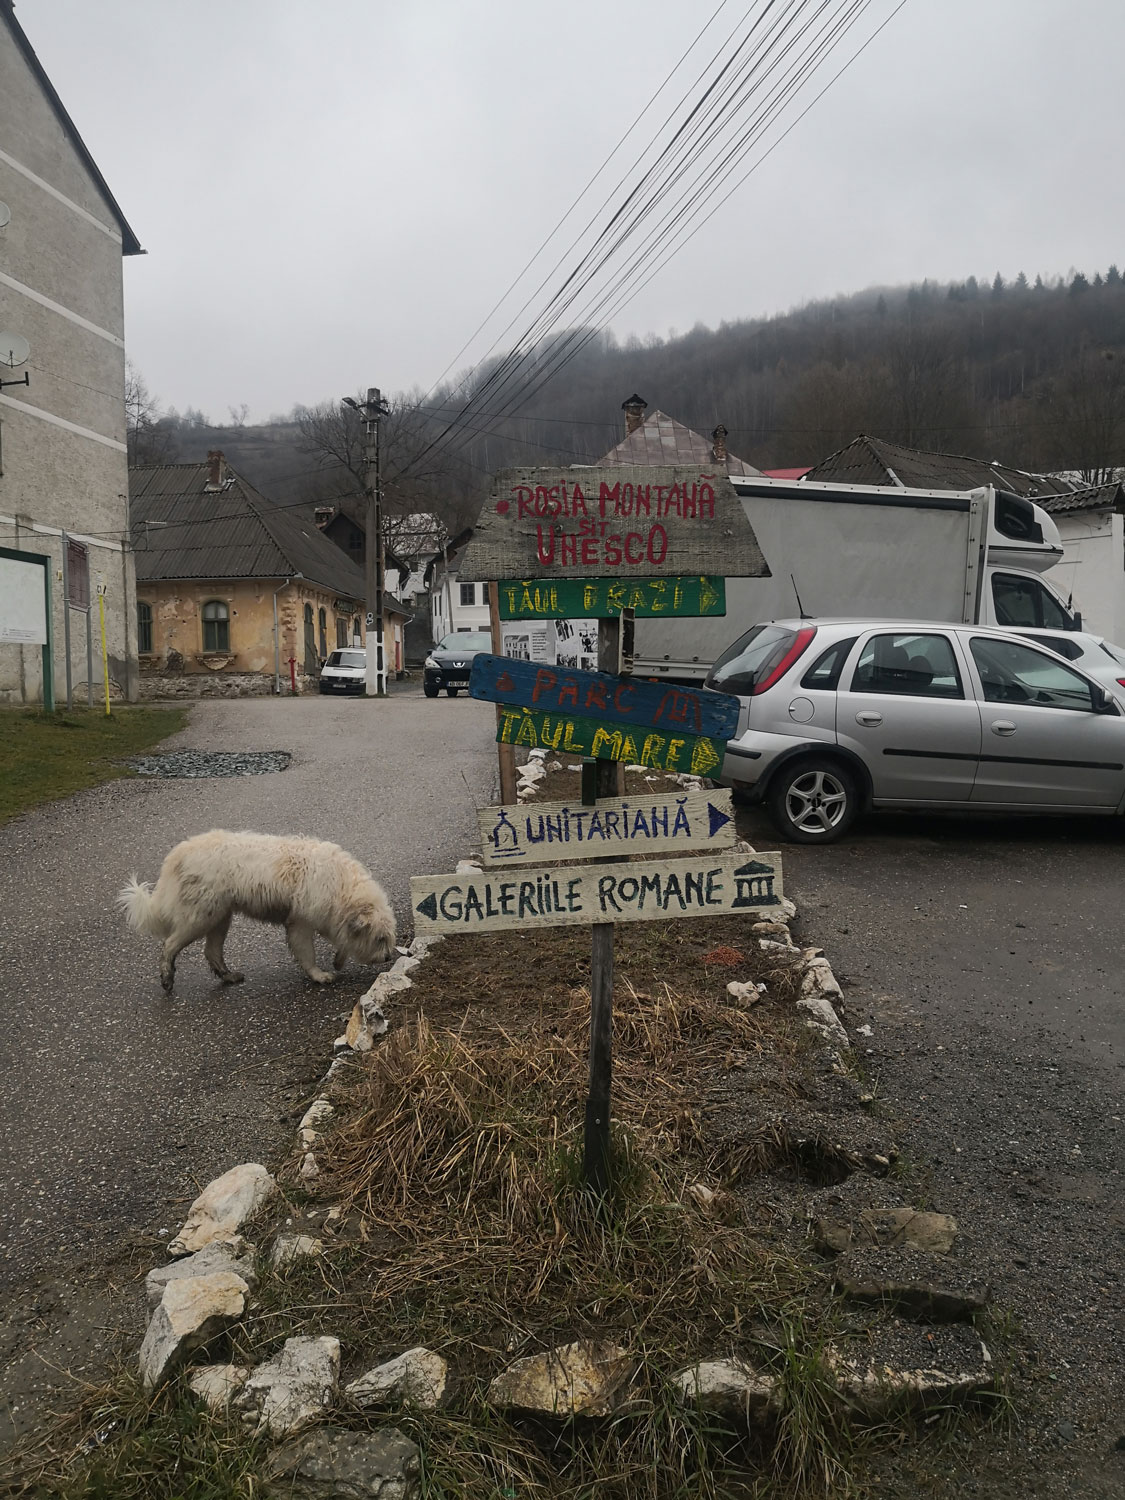 À l’entrée de Roşia montana, des panneaux indiquent que la commune est site protégé Unesco et en donnent les objectifs touristiques (galeries romaines notamment) © Globe Reporters